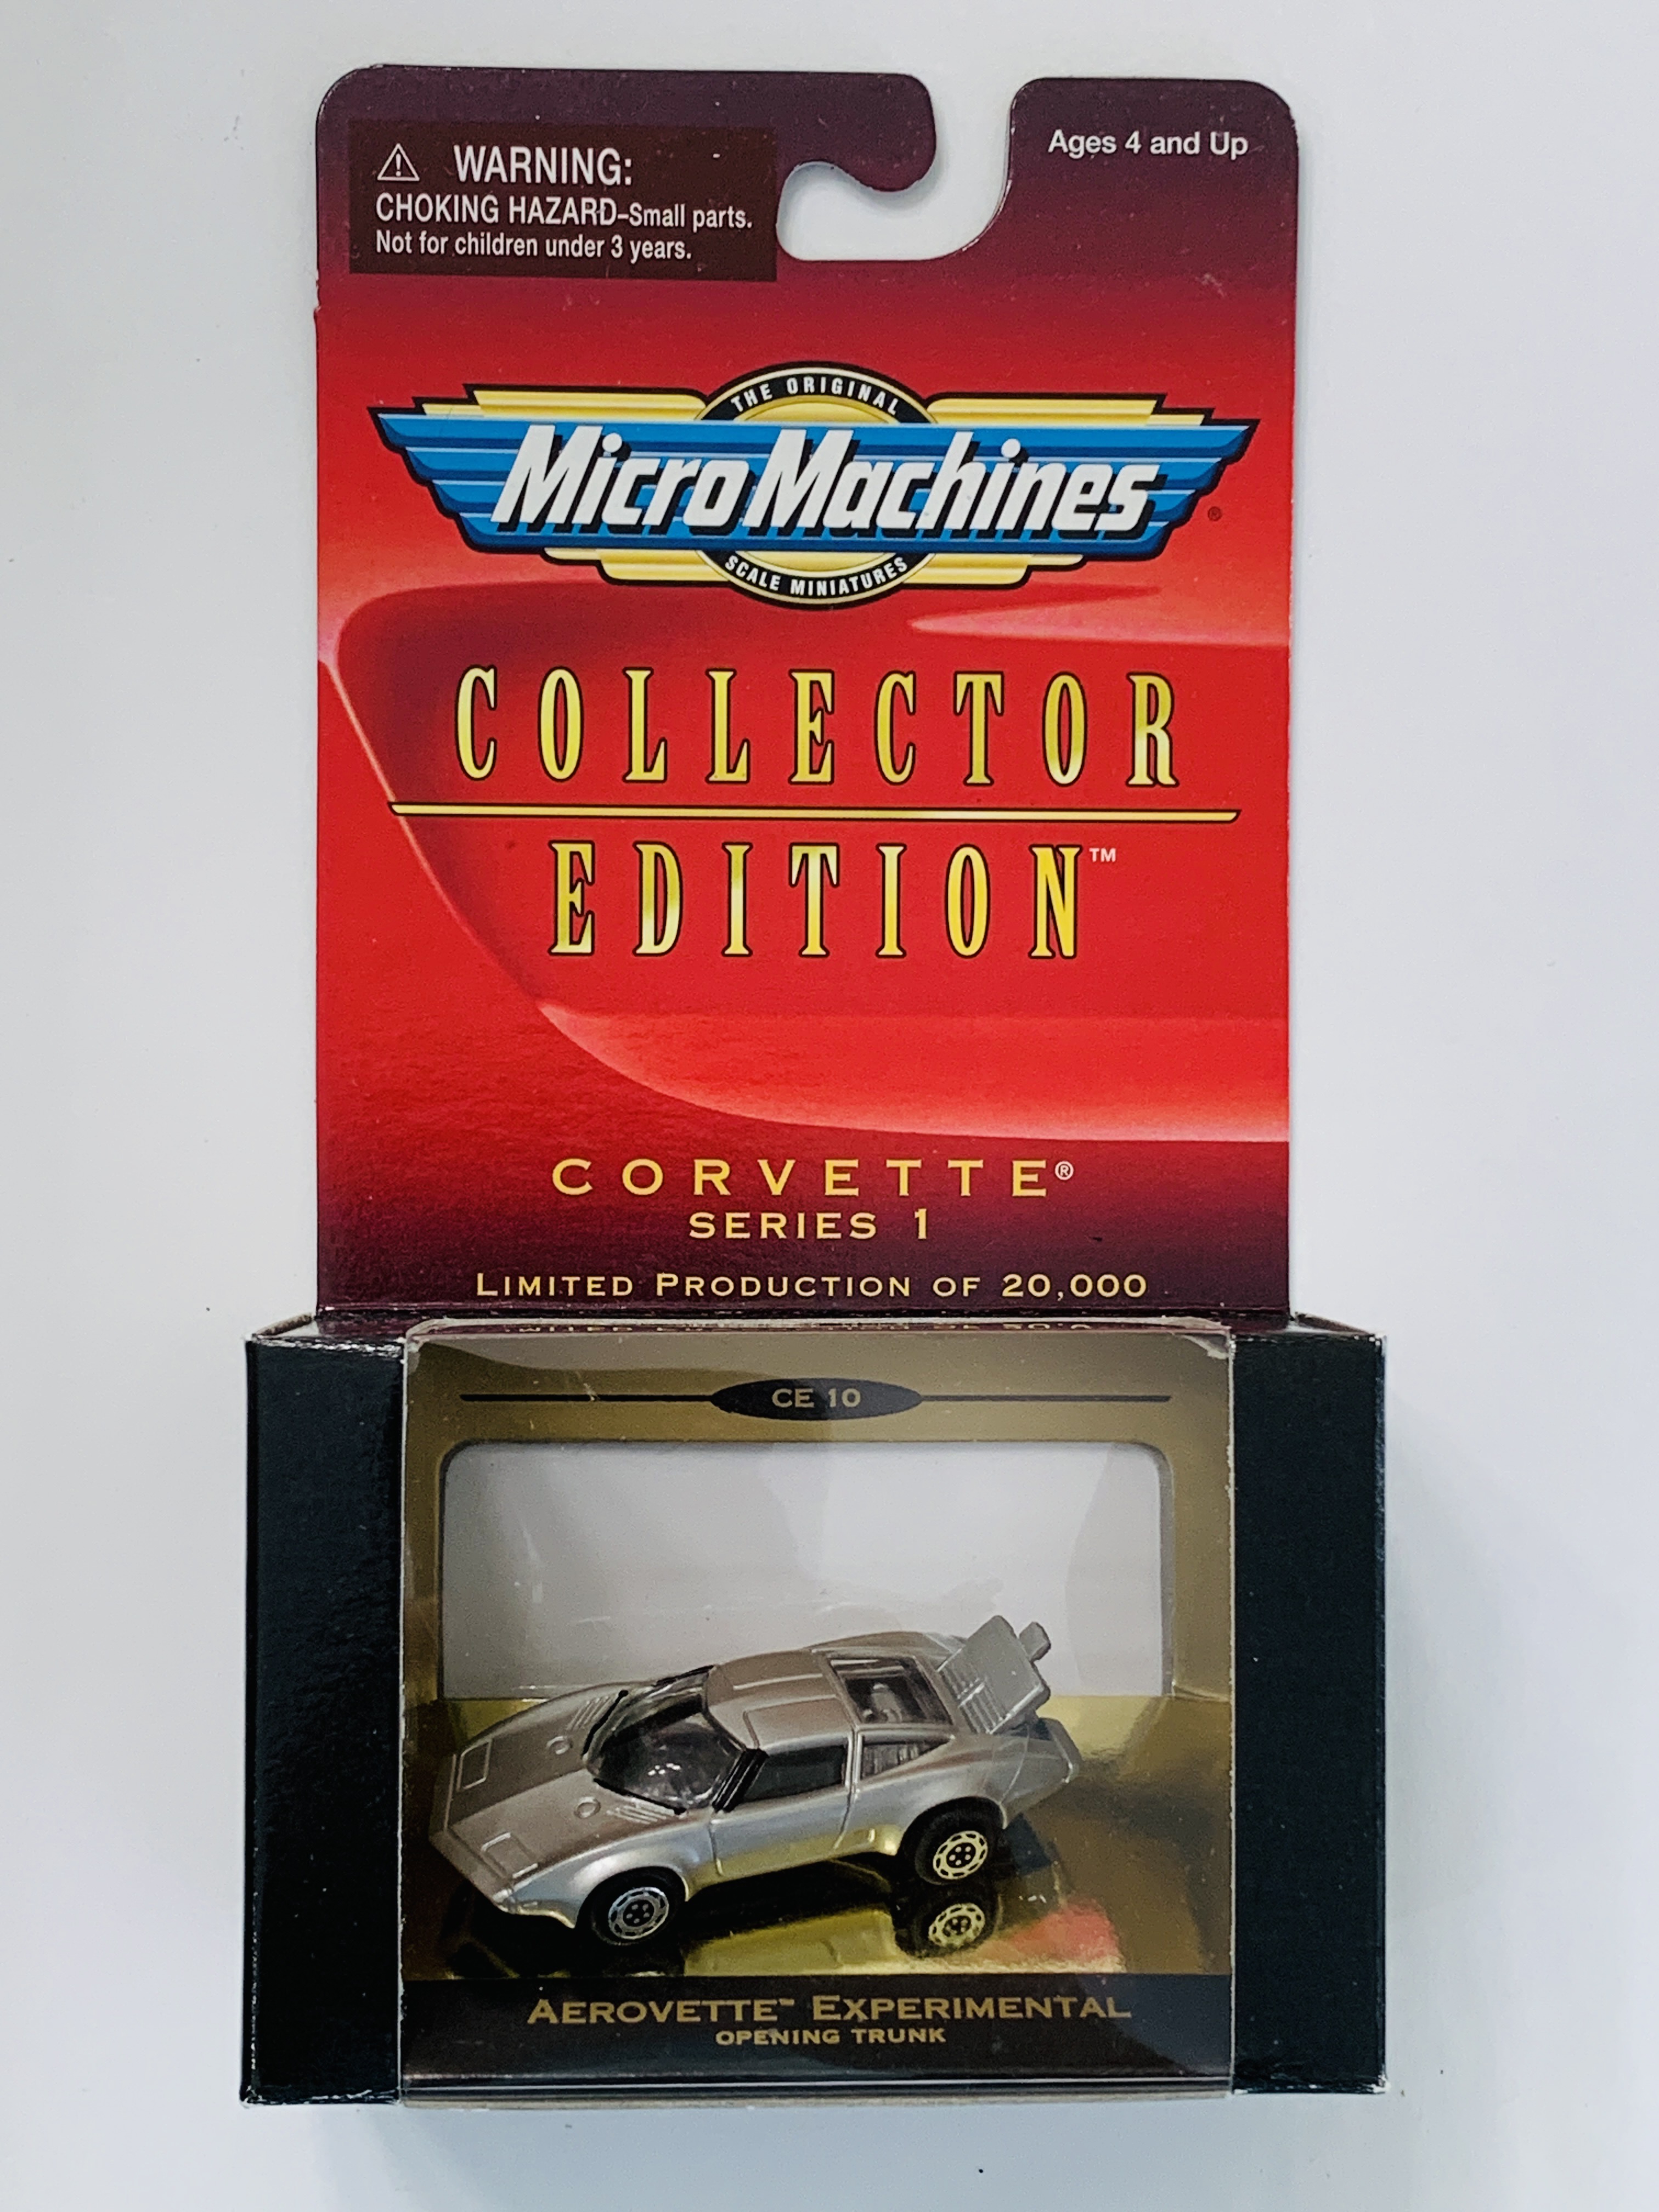 Micro Machines Collector Edition Corvette Series 1 Aerovette Experimental